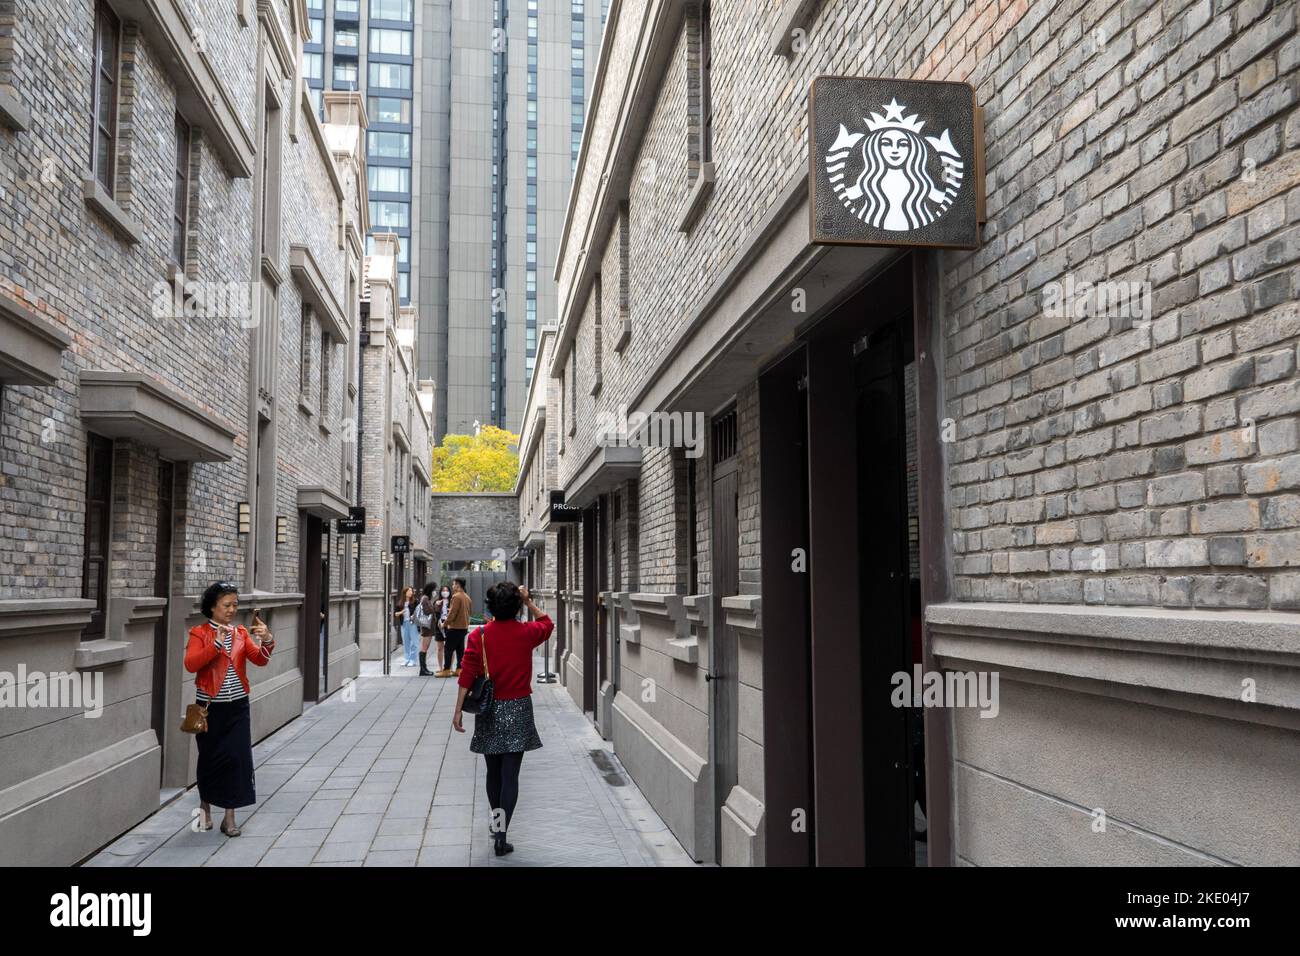 SHANGHAI, CHINE - 9 NOVEMBRE 2022 - Vue d'ensemble du magasin de concept de patrimoine immatériel Starbucks à Shanghai, Chine, 9 novembre 2022. Banque D'Images